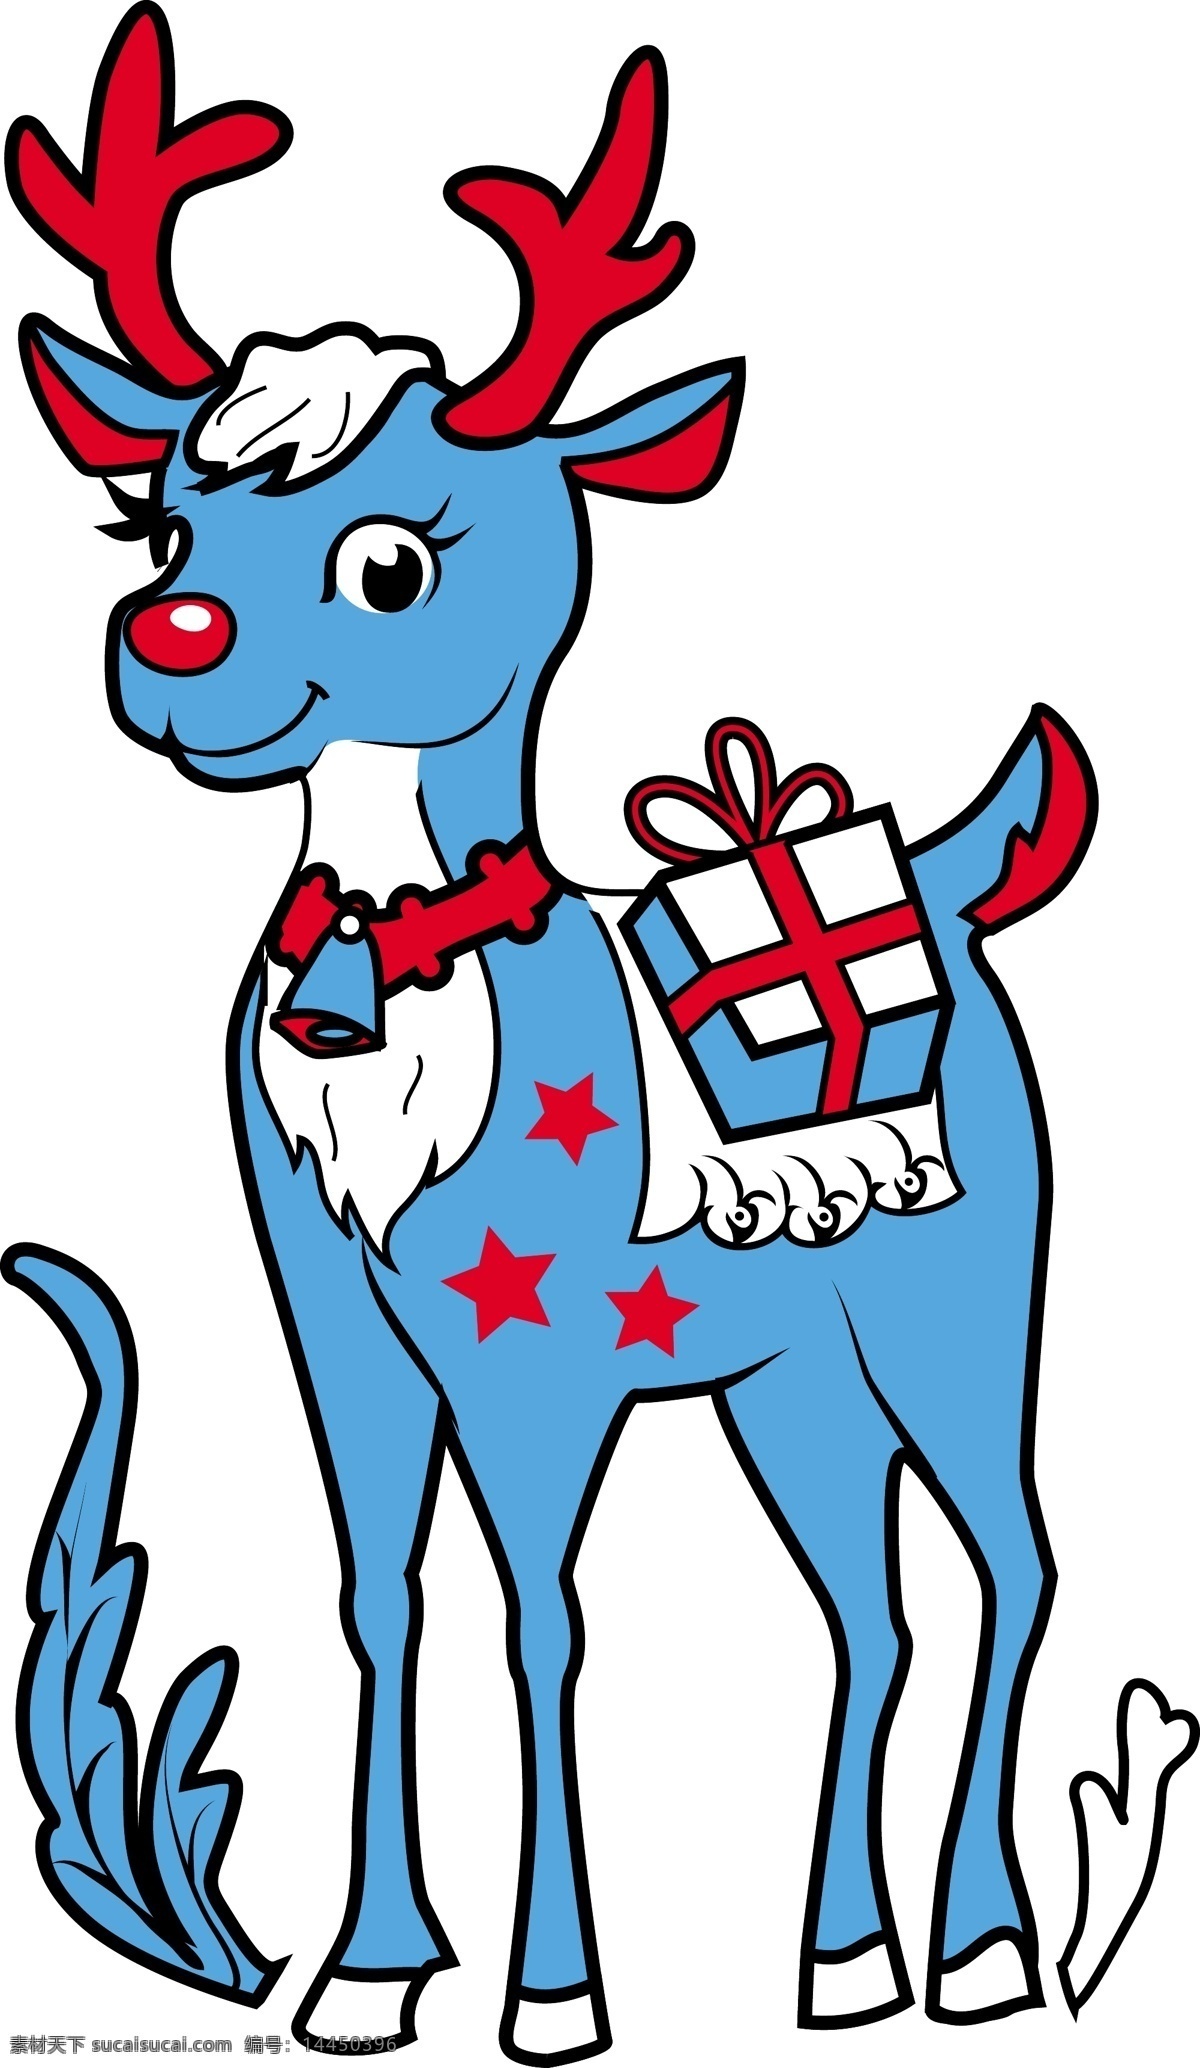 卡通 圣诞 麋鹿 矢量 动物 礼包 礼品 圣诞节 矢量图 节日素材